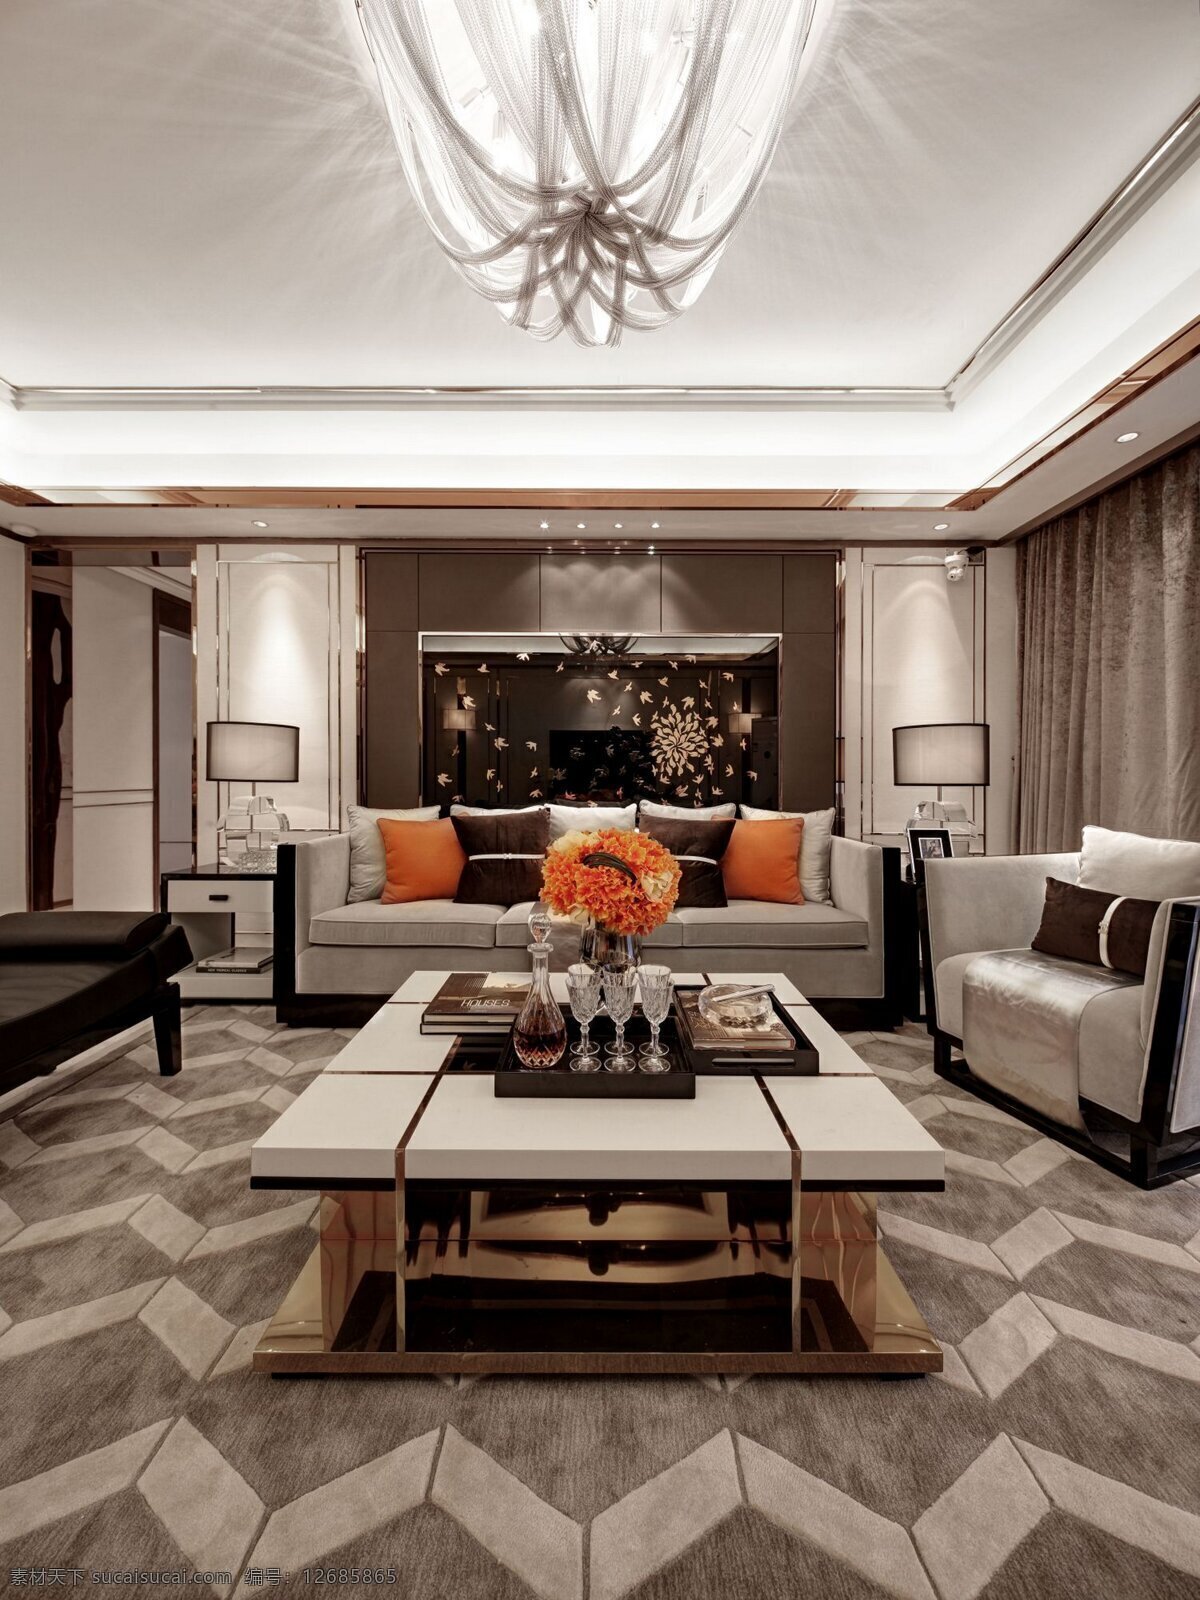 现代 时尚 客厅 沙发 室内装修 效果图 吊灯 客厅装修 几何图案地毯 深色背景墙